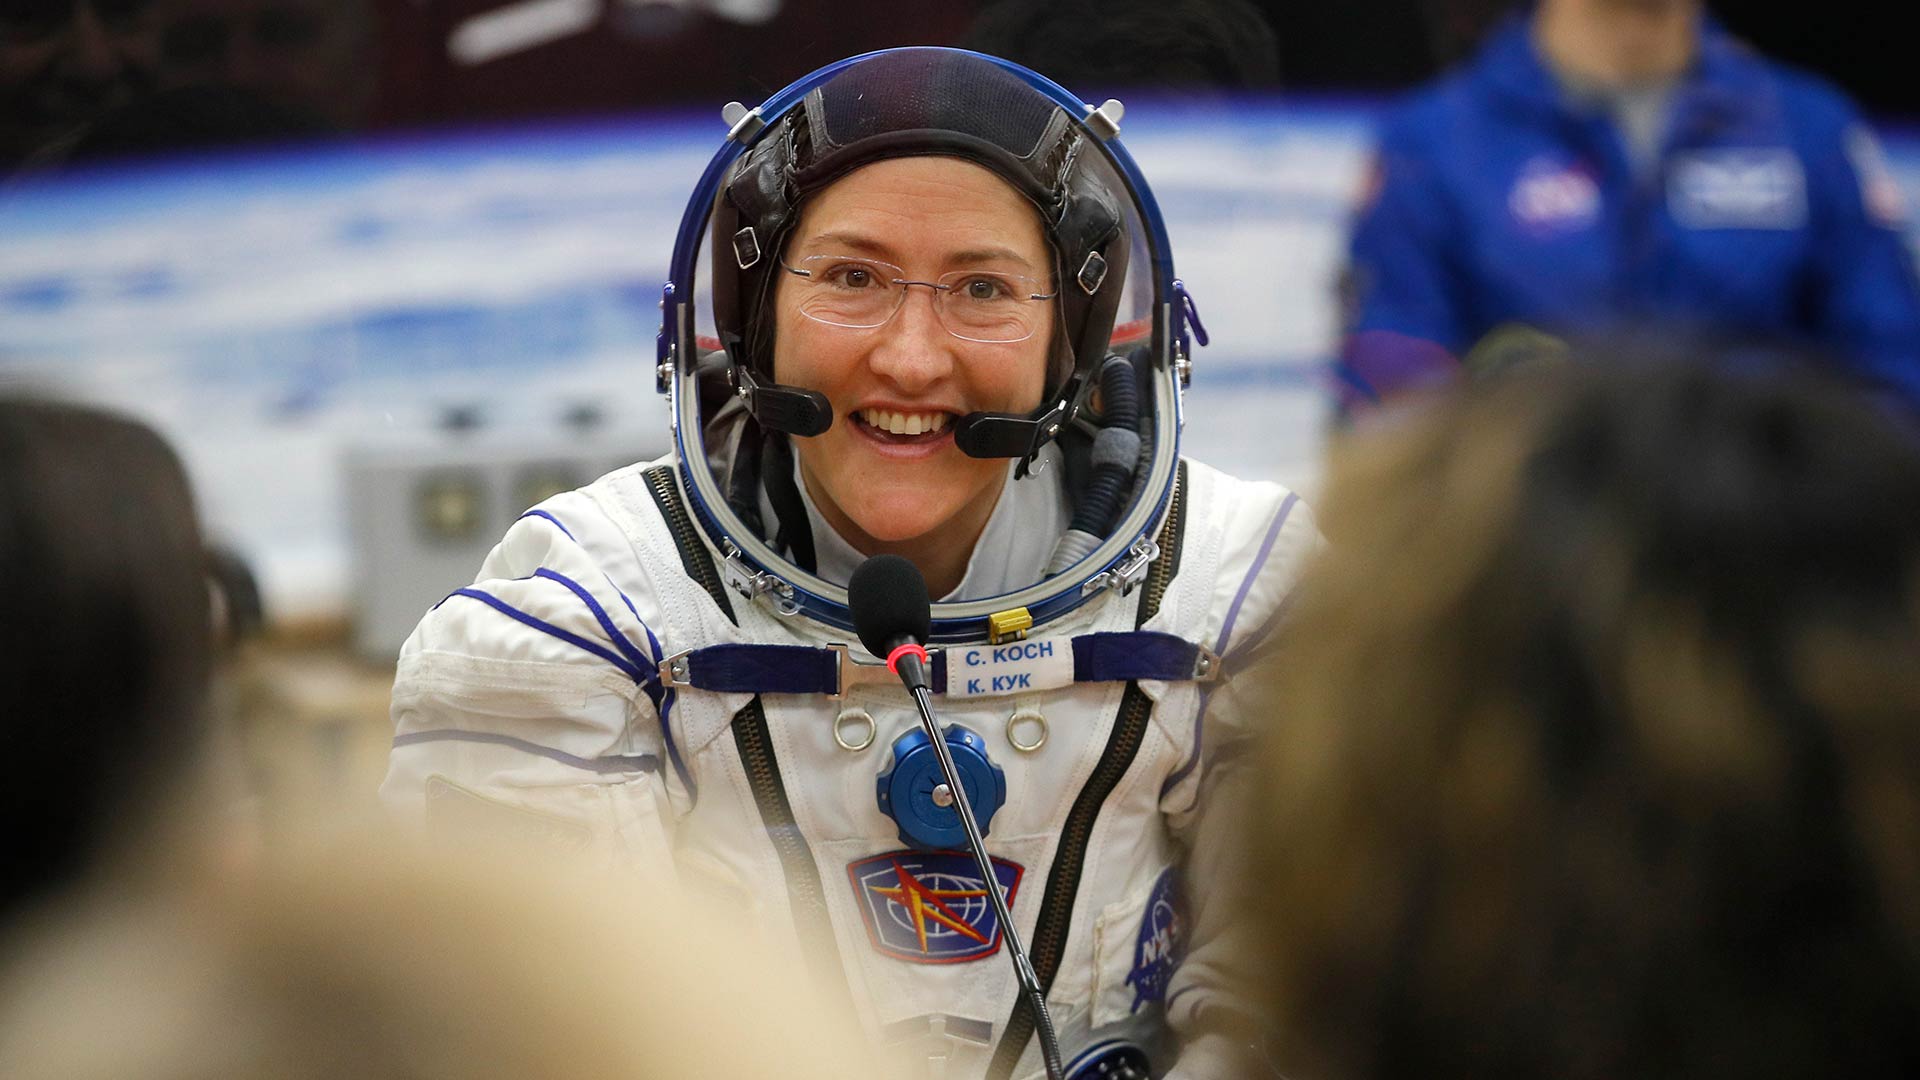 La astronauta Christina Koch regresa a la Tierra tras 11 meses en el espacio, una cifra récord